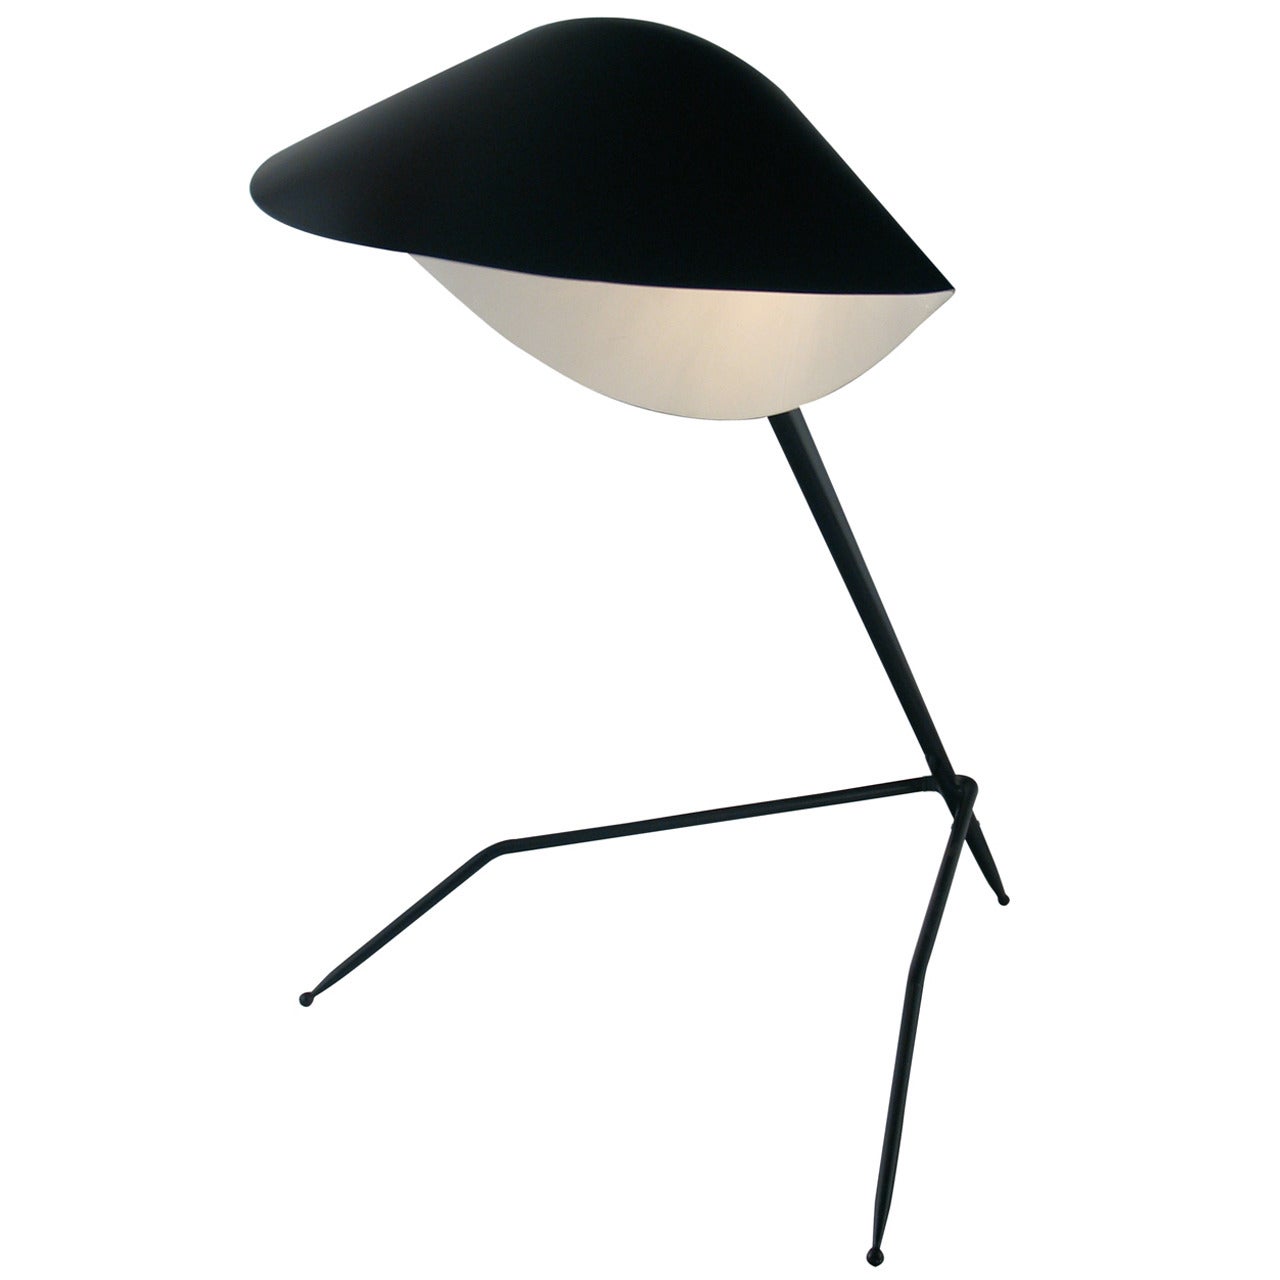 Tripod Desk Lamp by Serge Mouille